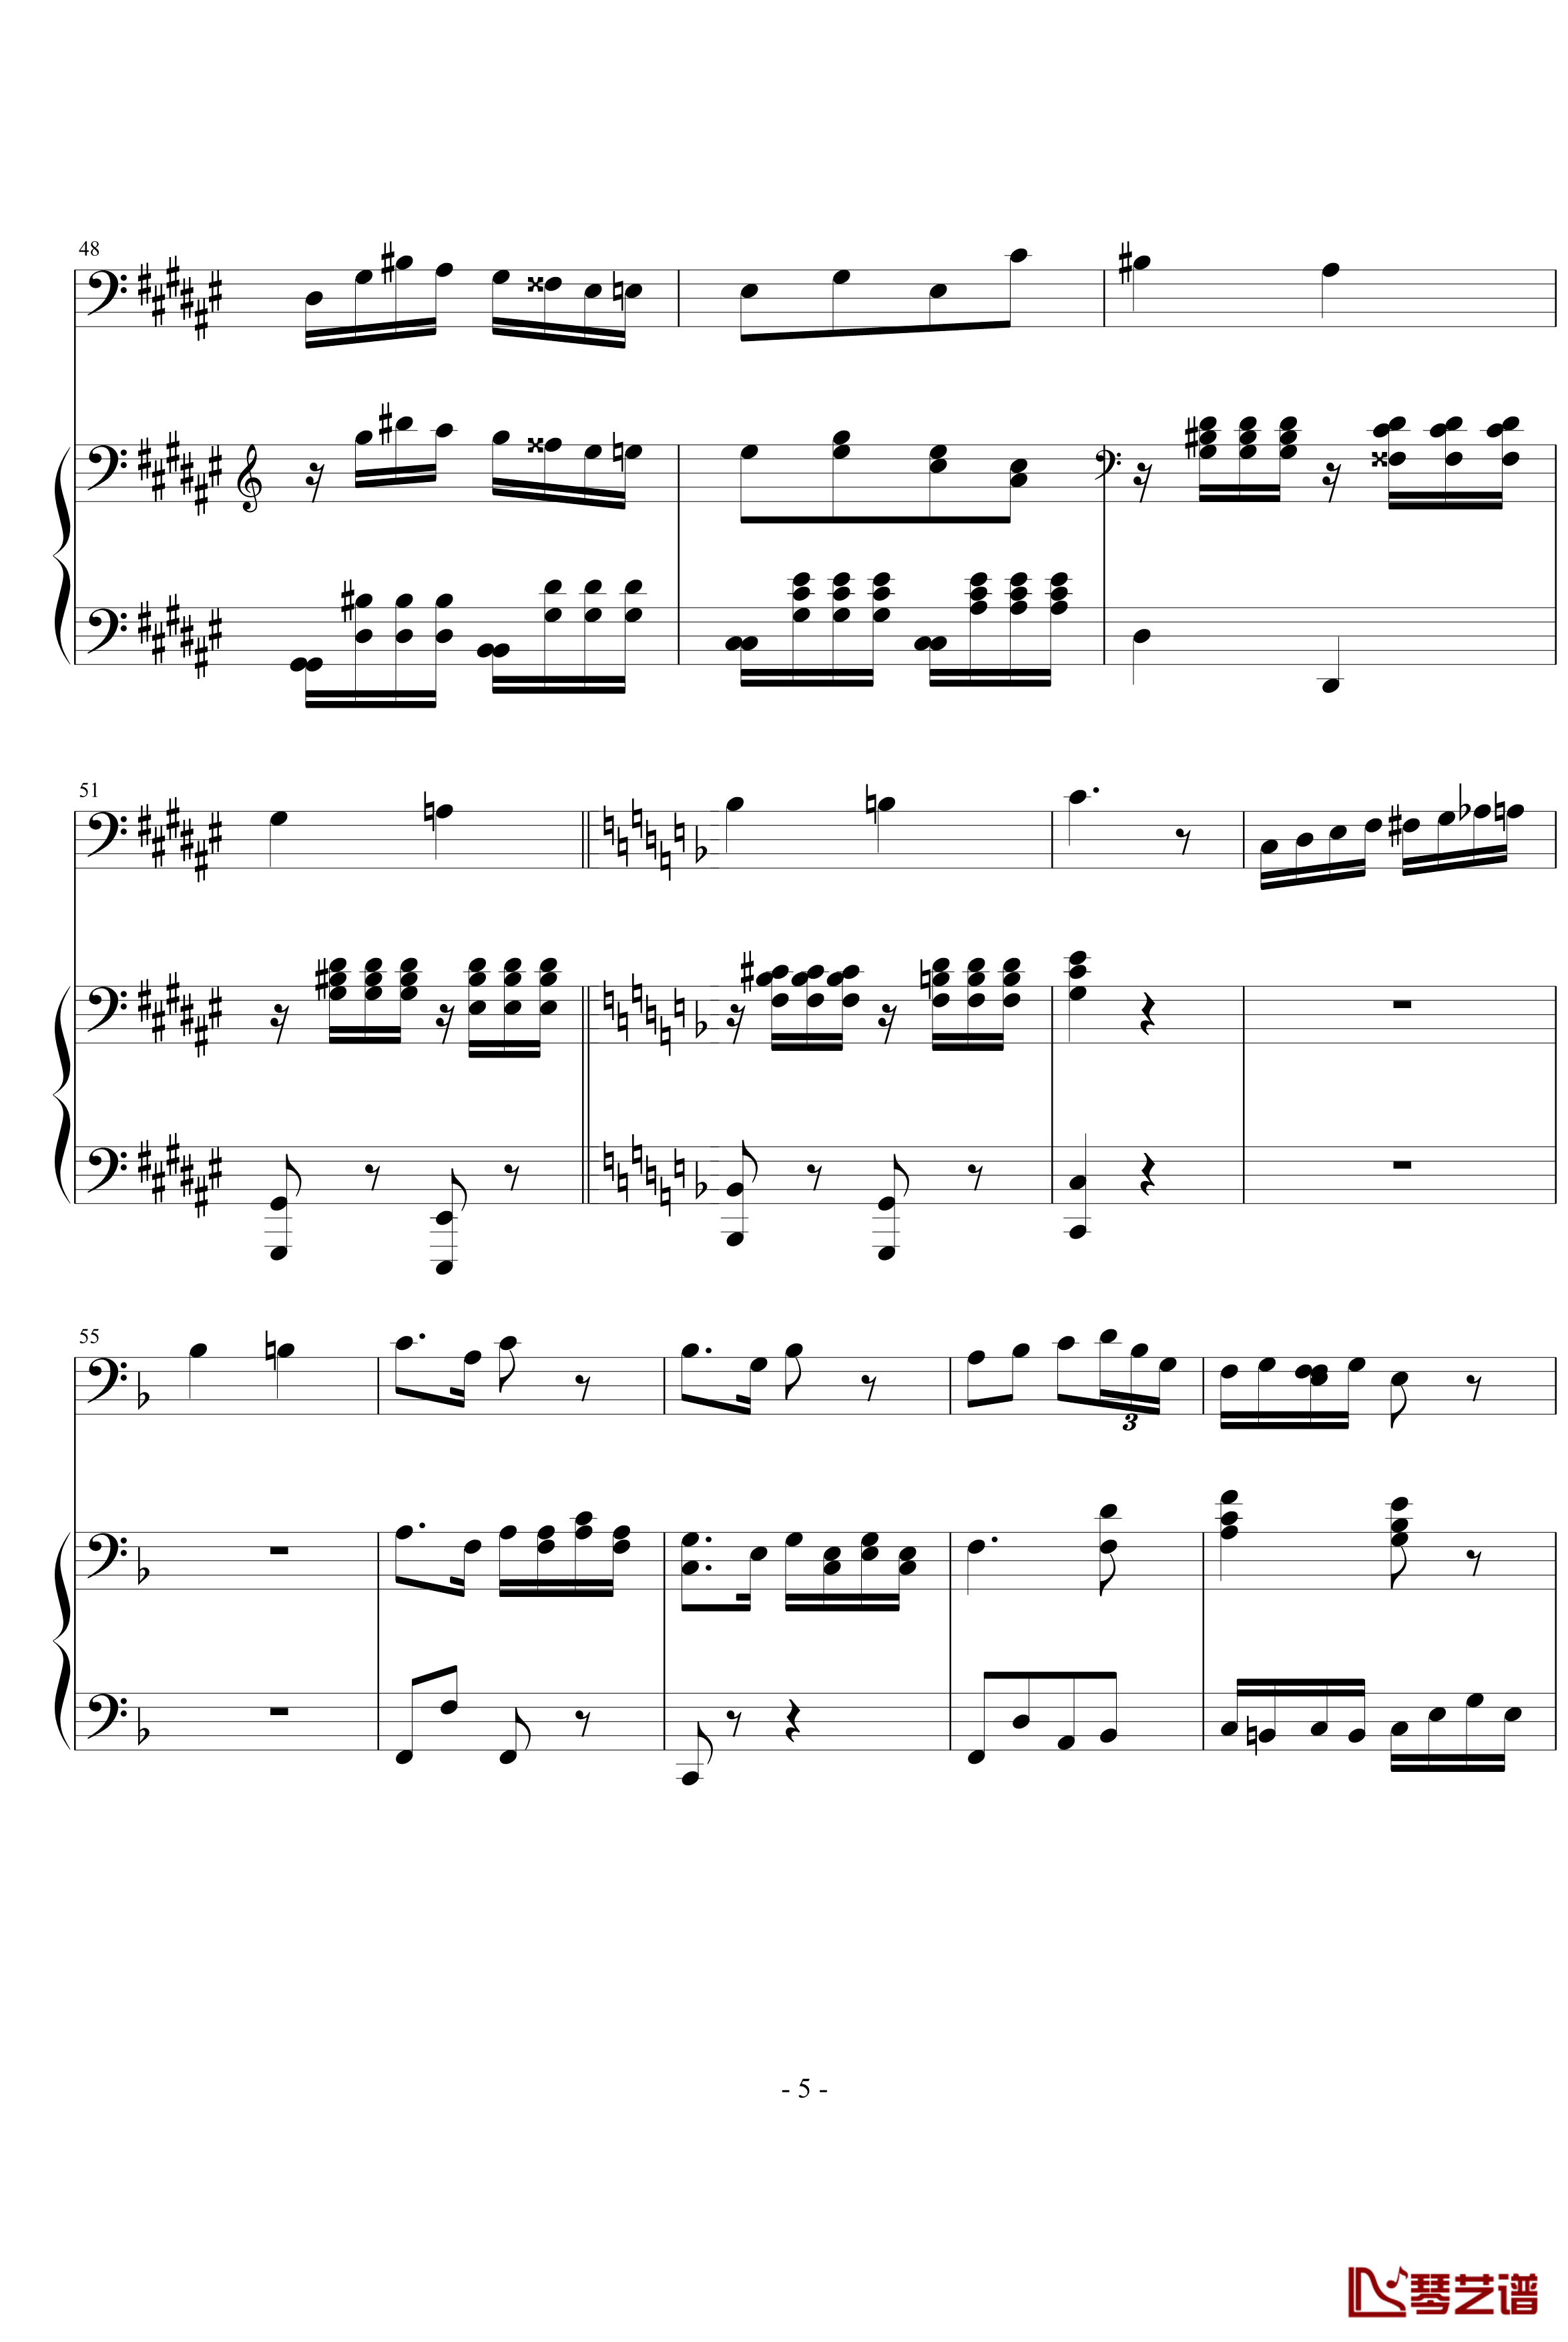 大提琴协奏曲钢琴谱-海顿5